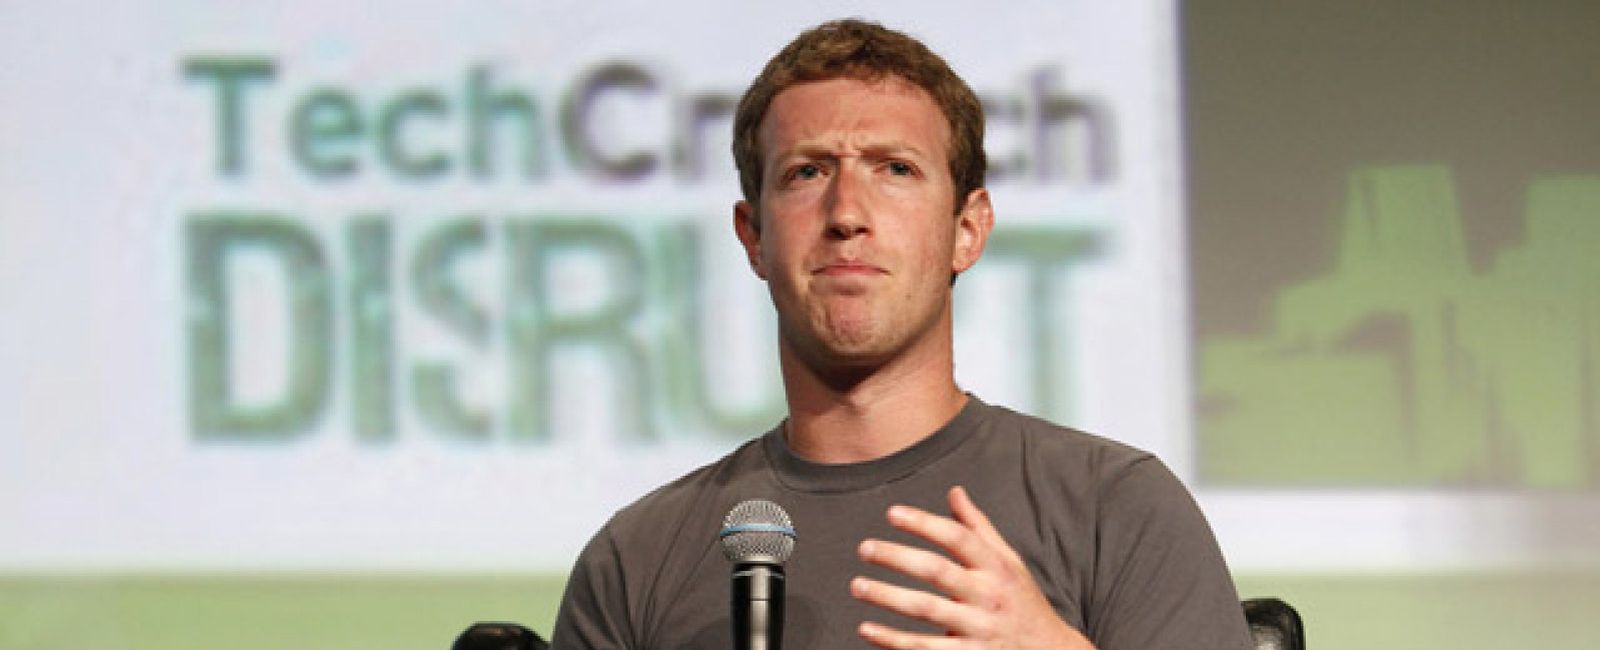 Foto: Zuckerberg, tras el descalabro de Facebook: "Ganaremos más dinero con el móvil que con los ordenadores"